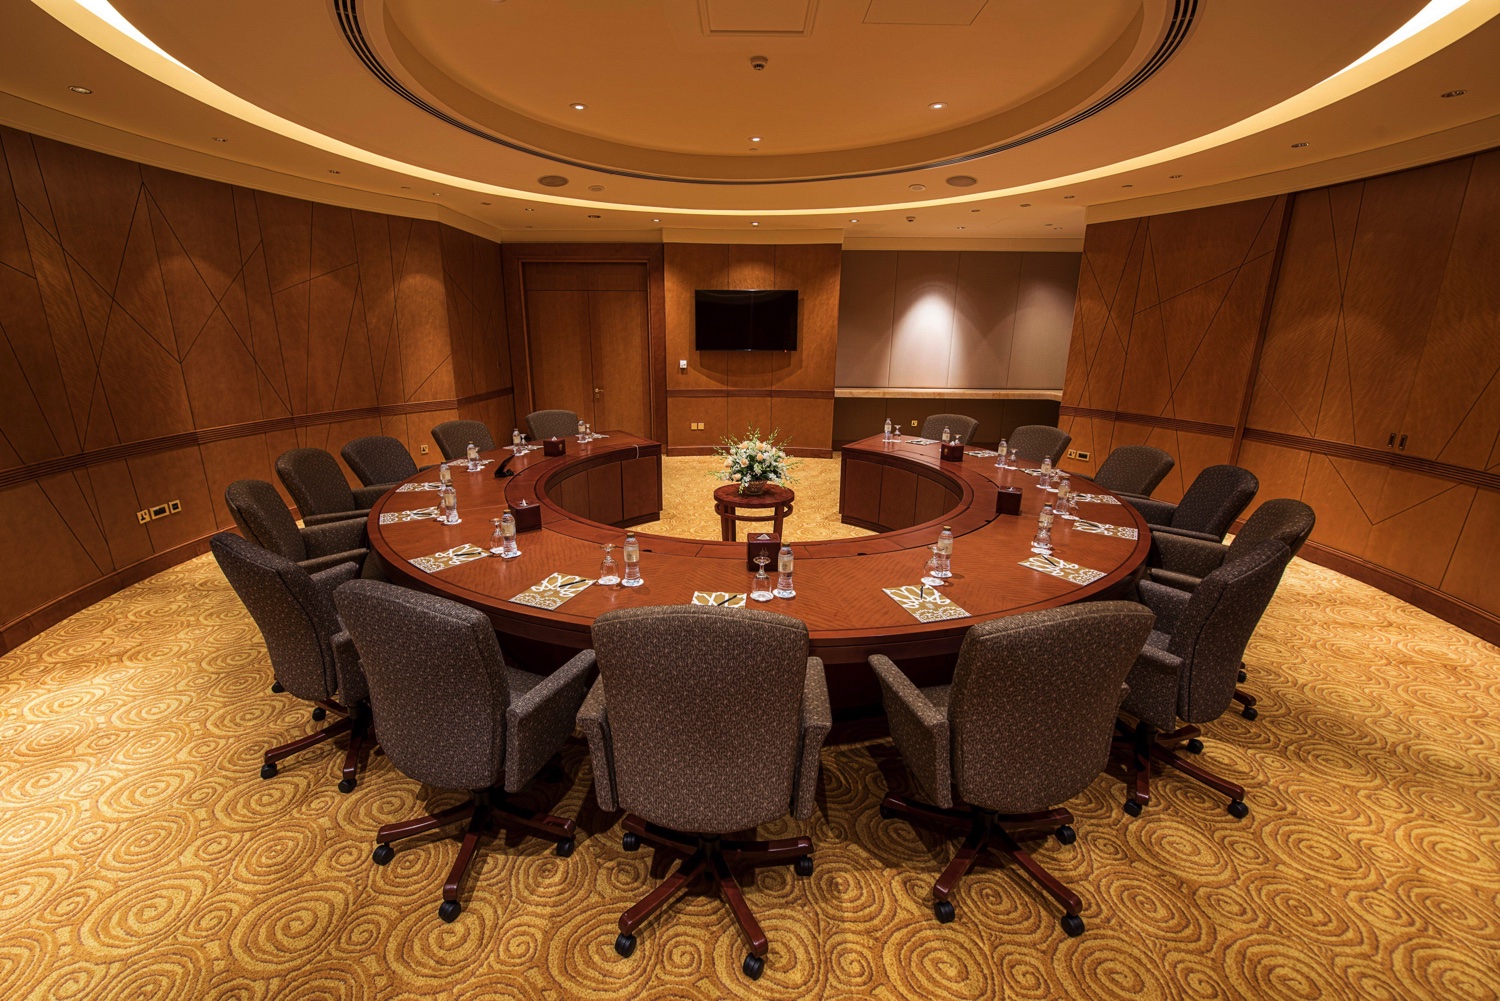 Ein Konferenzraum im Emirates Palace ist der perfekte Ort für Ihr Meeting